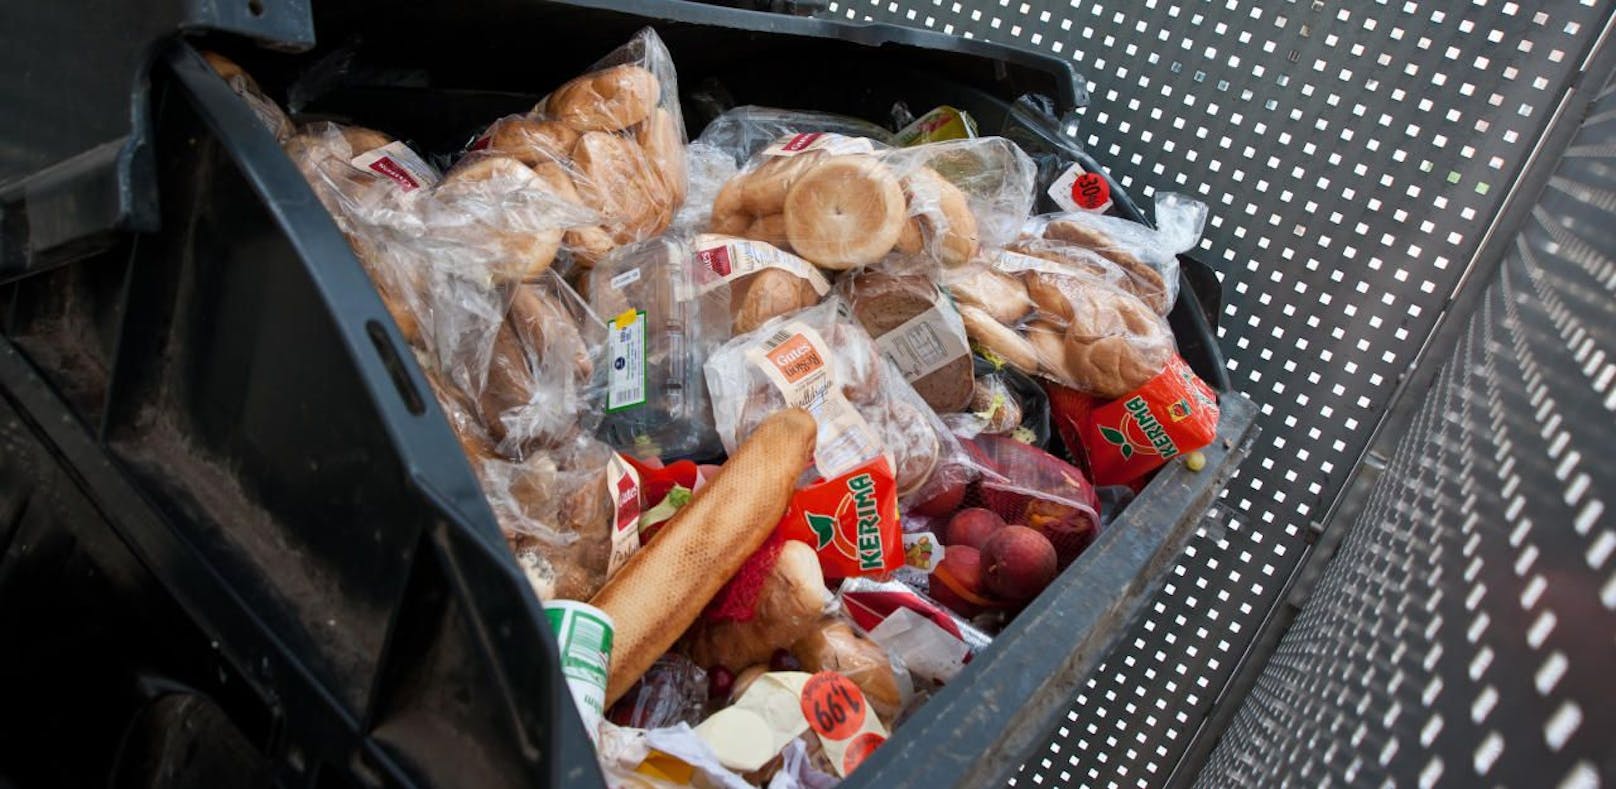 Jährlich landen allein in den Wiener Großküchen 13.000 Tonnen Lebensmittel im Müll.